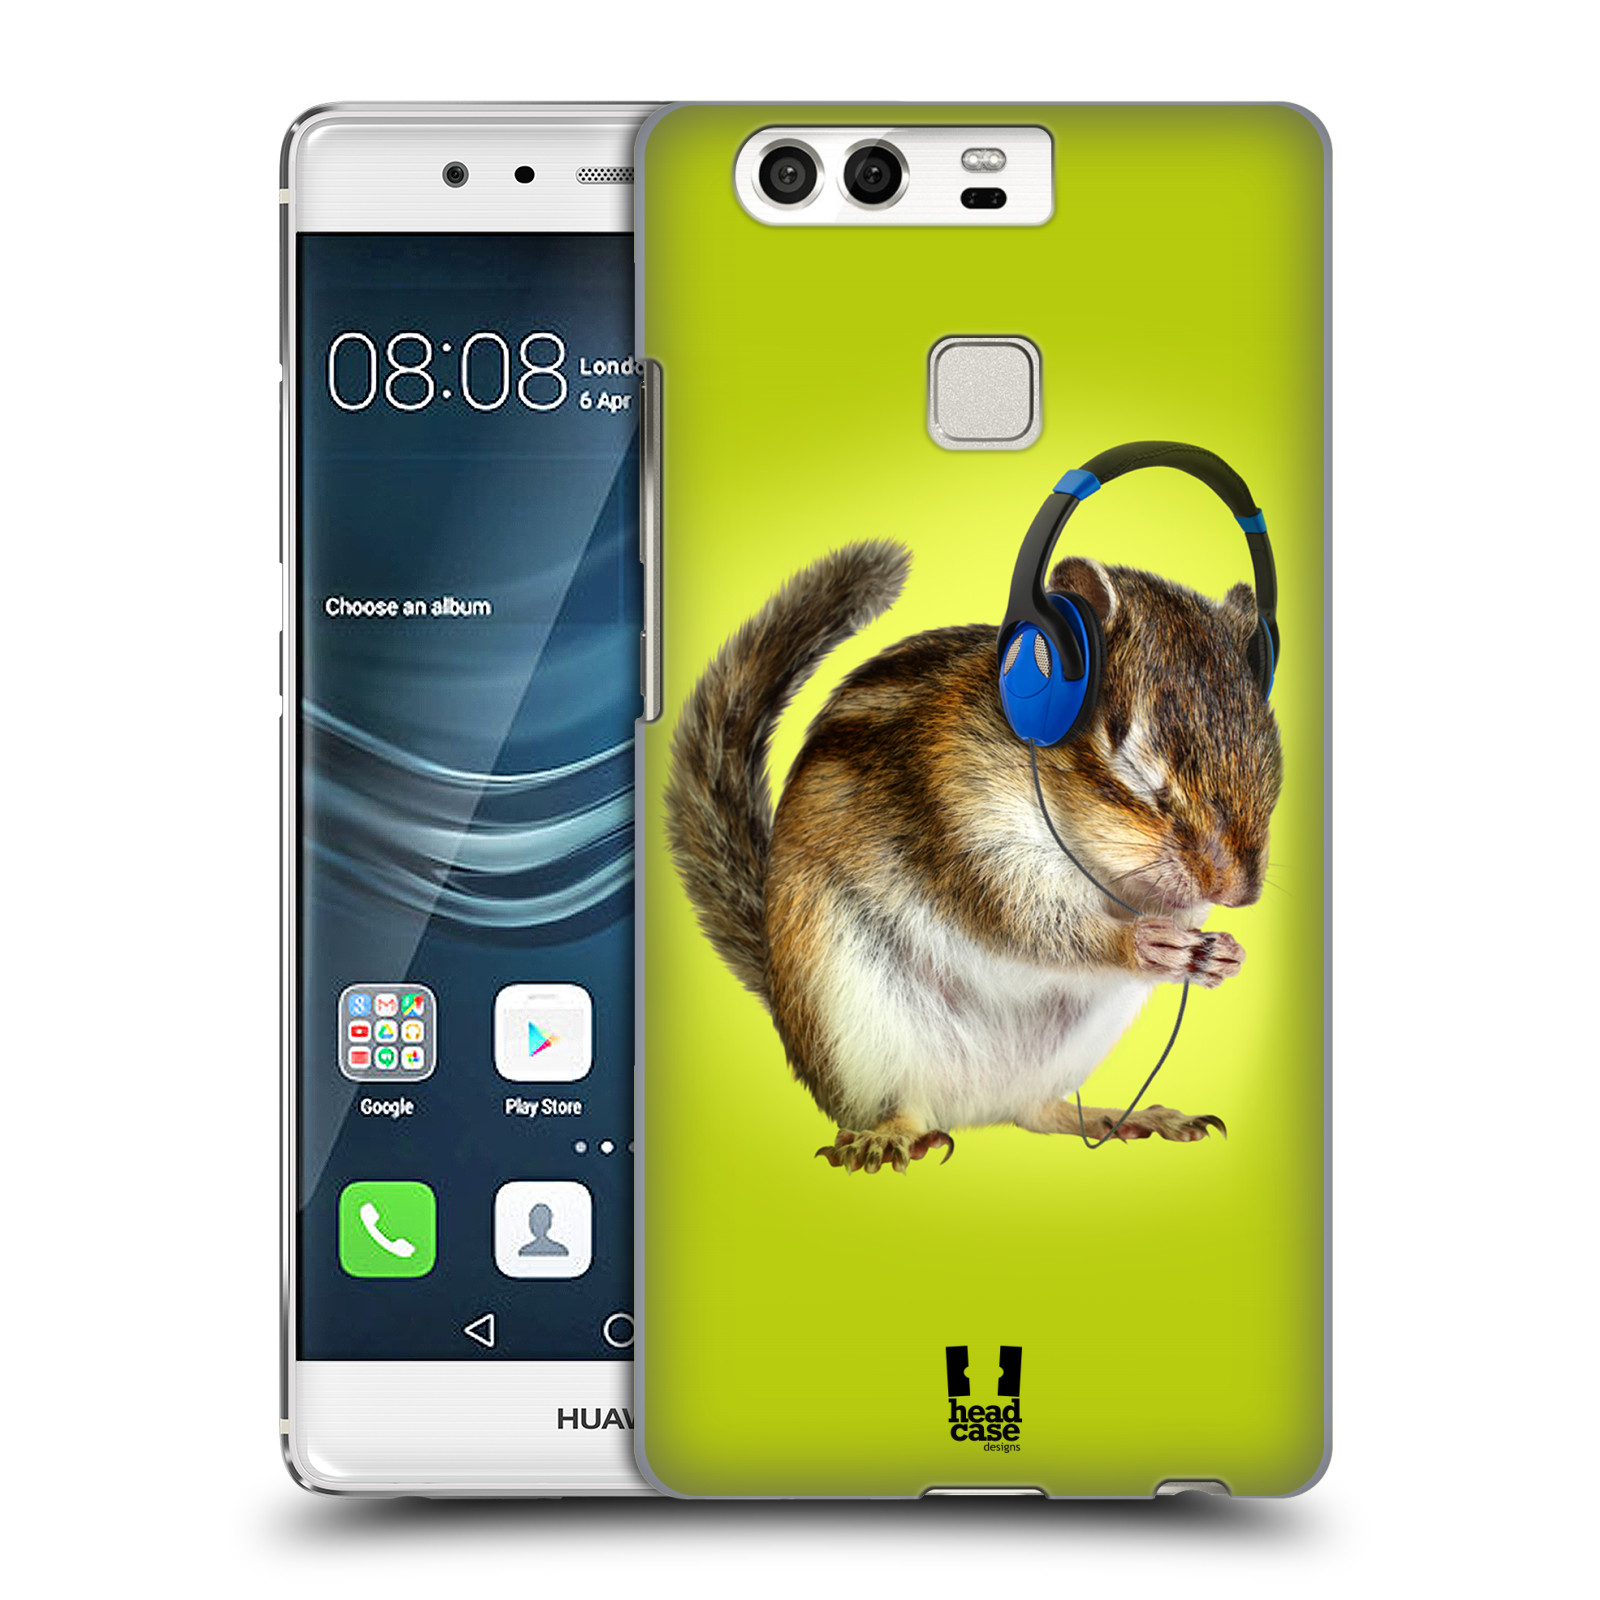 HEAD CASE plastový obal na mobil Huawei P9 / P9 DUAL SIM vzor Legrační zvířátka veverka se sluchátky